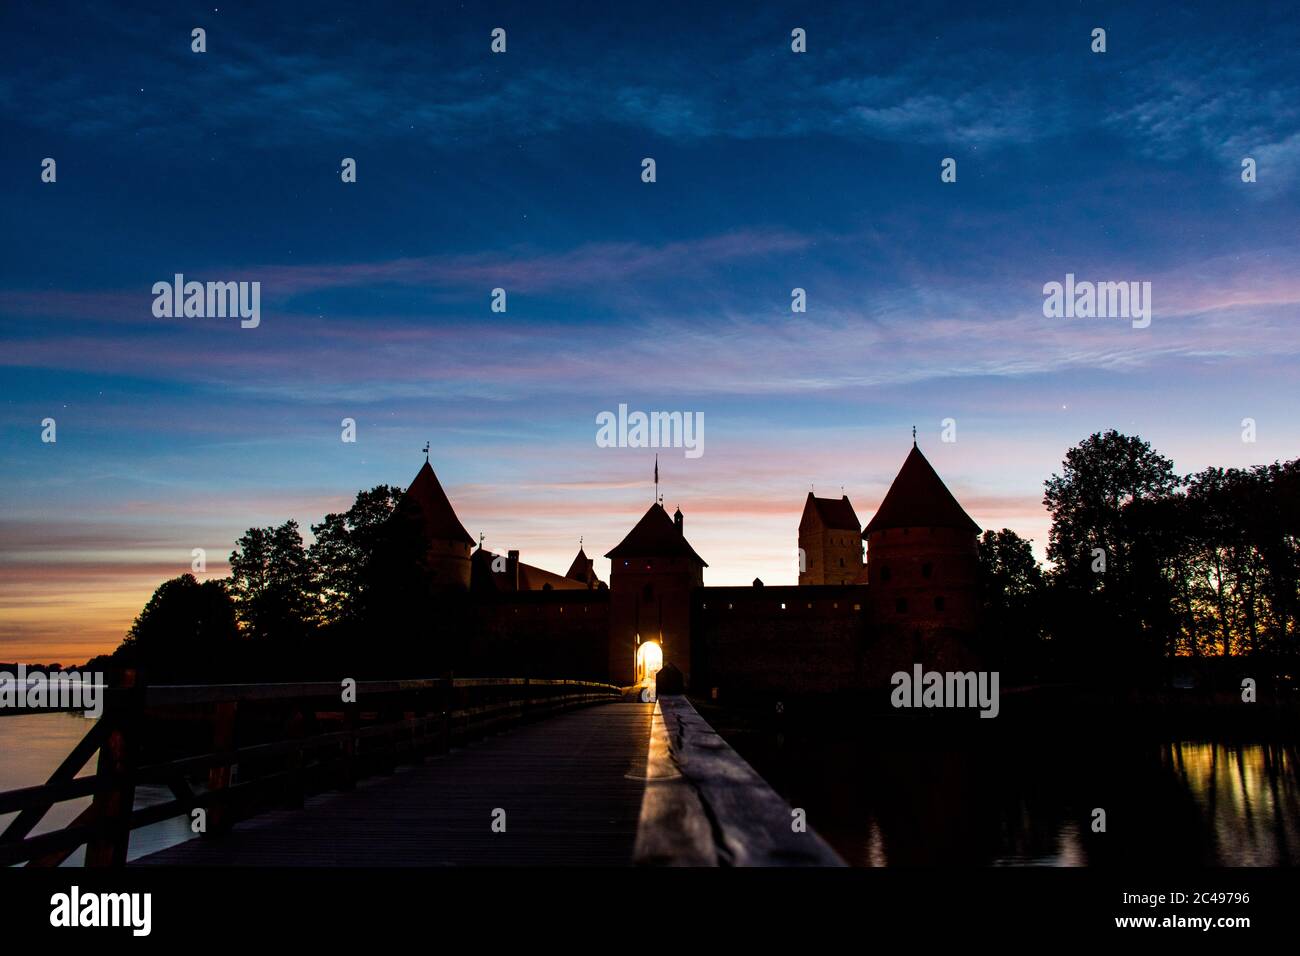 Mittelalterliche Burg von Trakai, Vilnius, Litauen, Osteuropa, zwischen schönen Seen und Natur, wunderbare Mittsommernacht Stockfoto